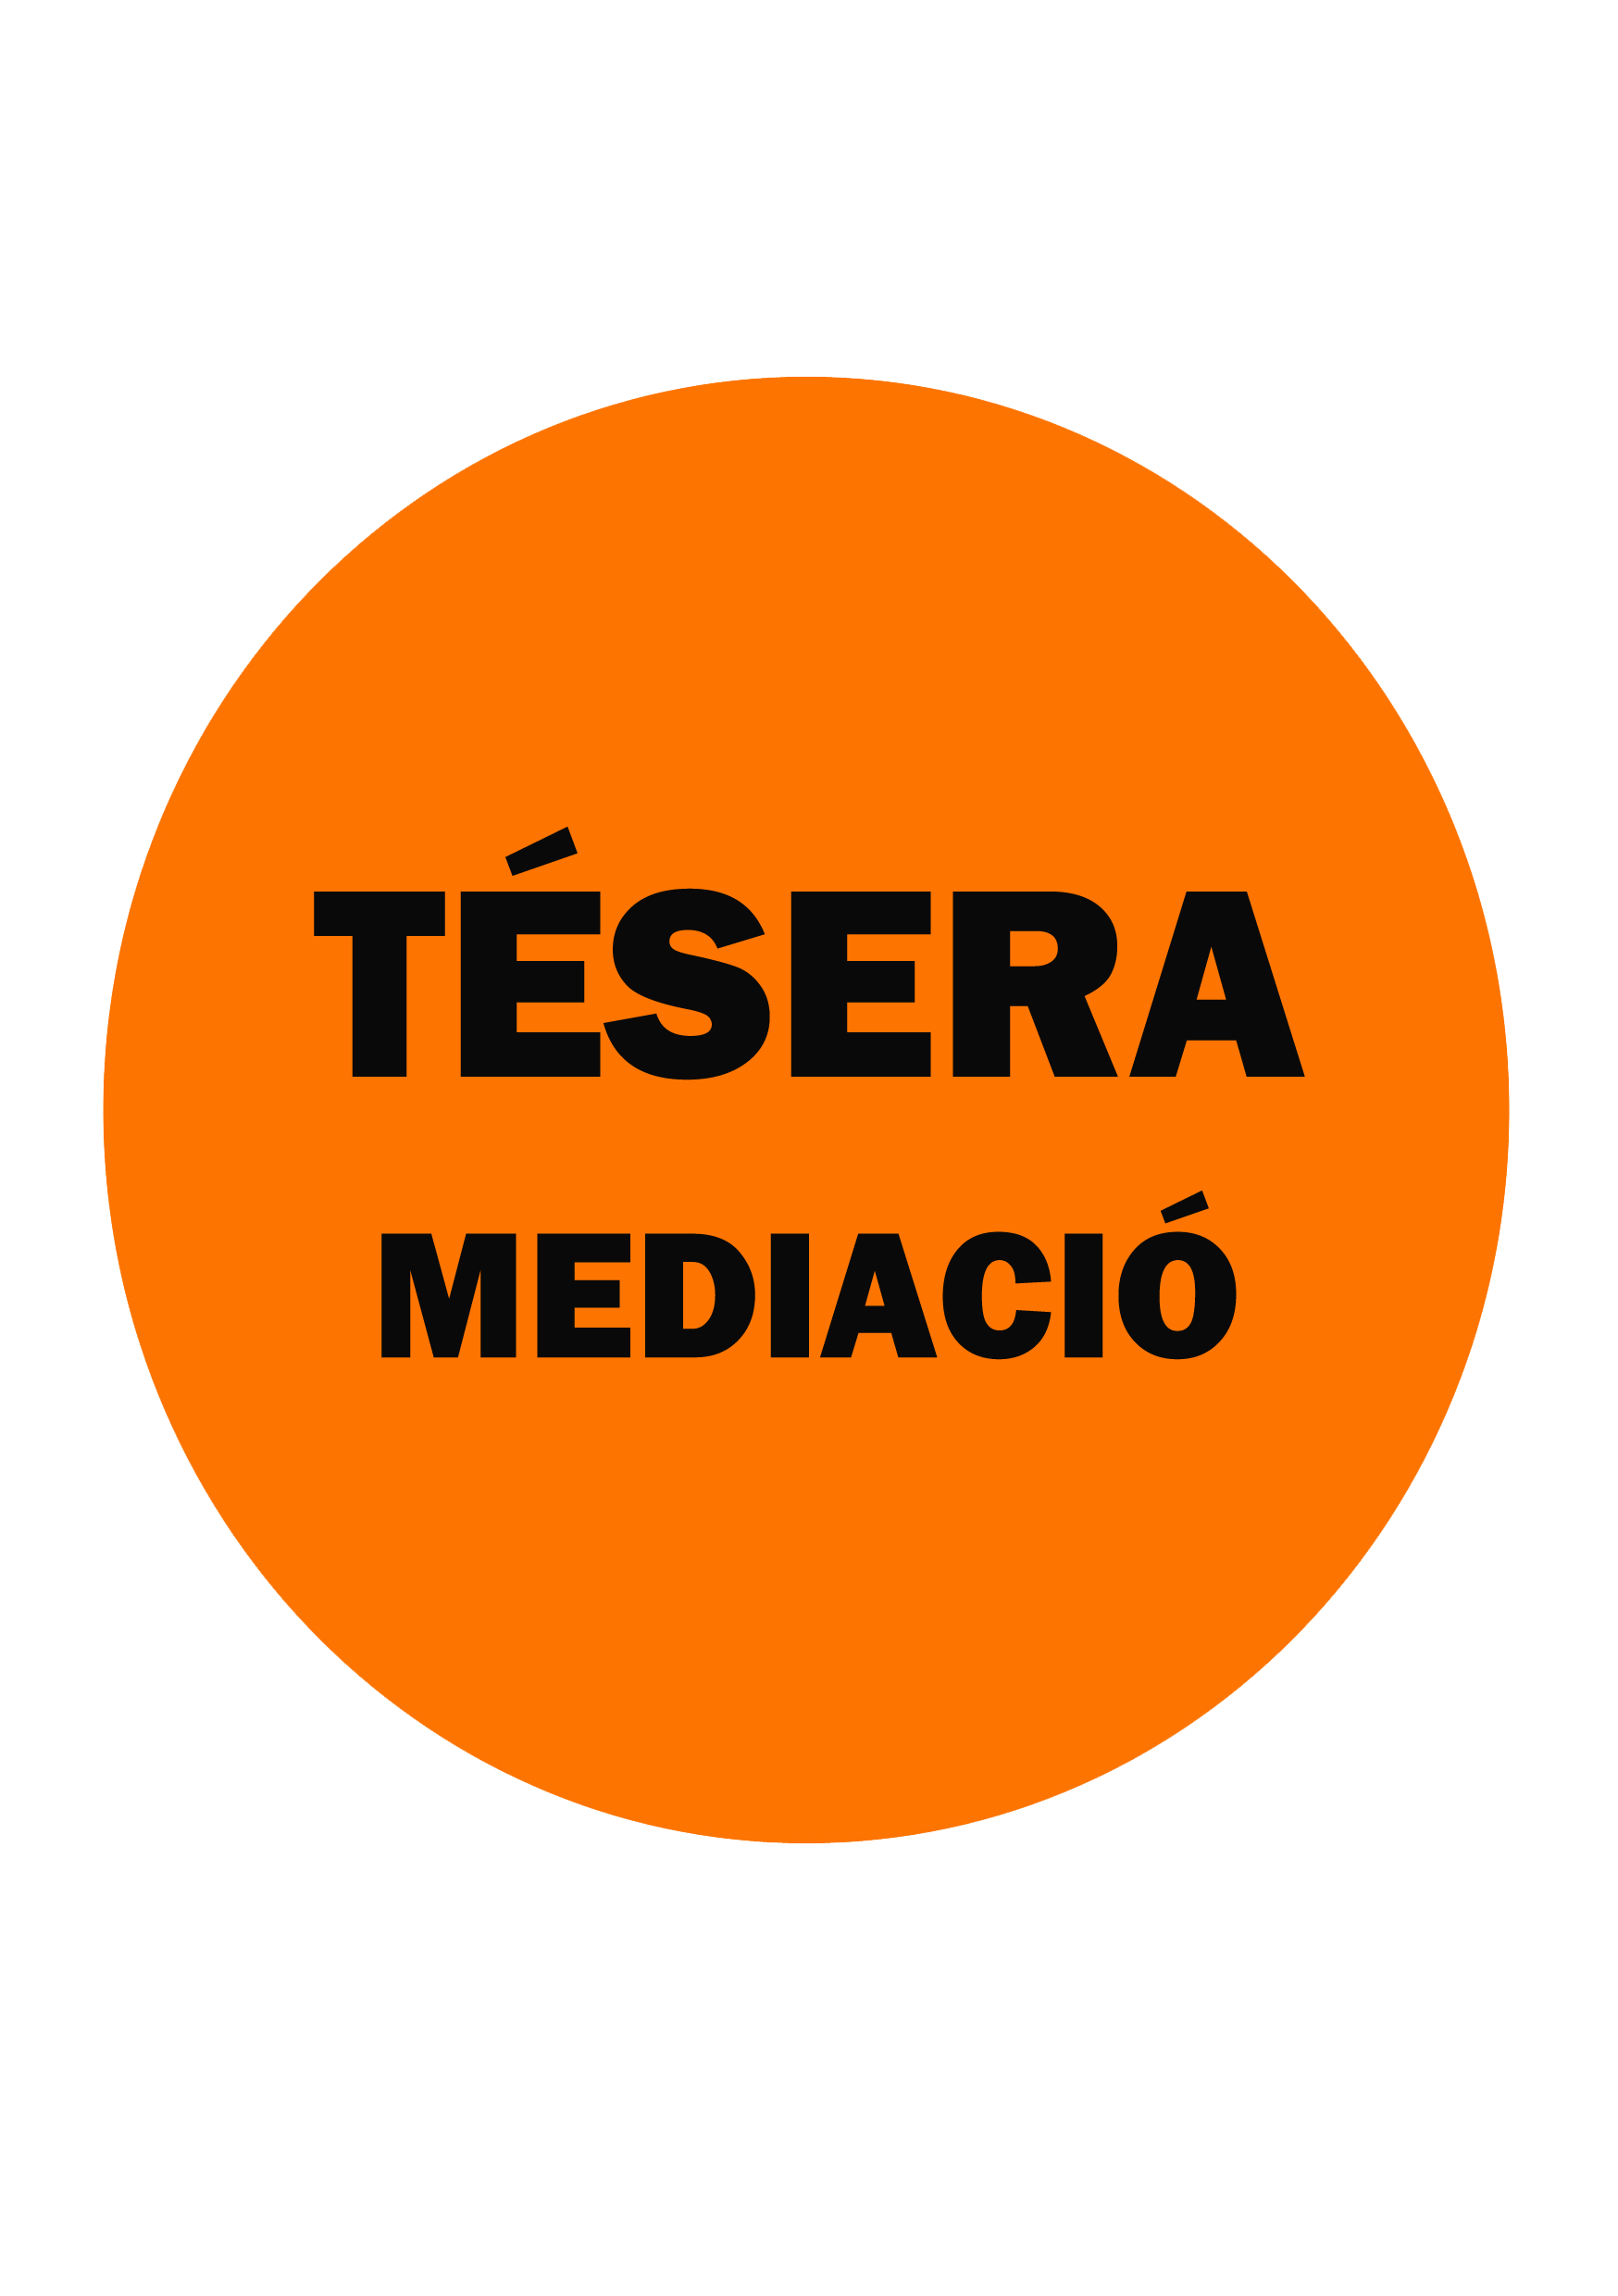 Tésera Mediació